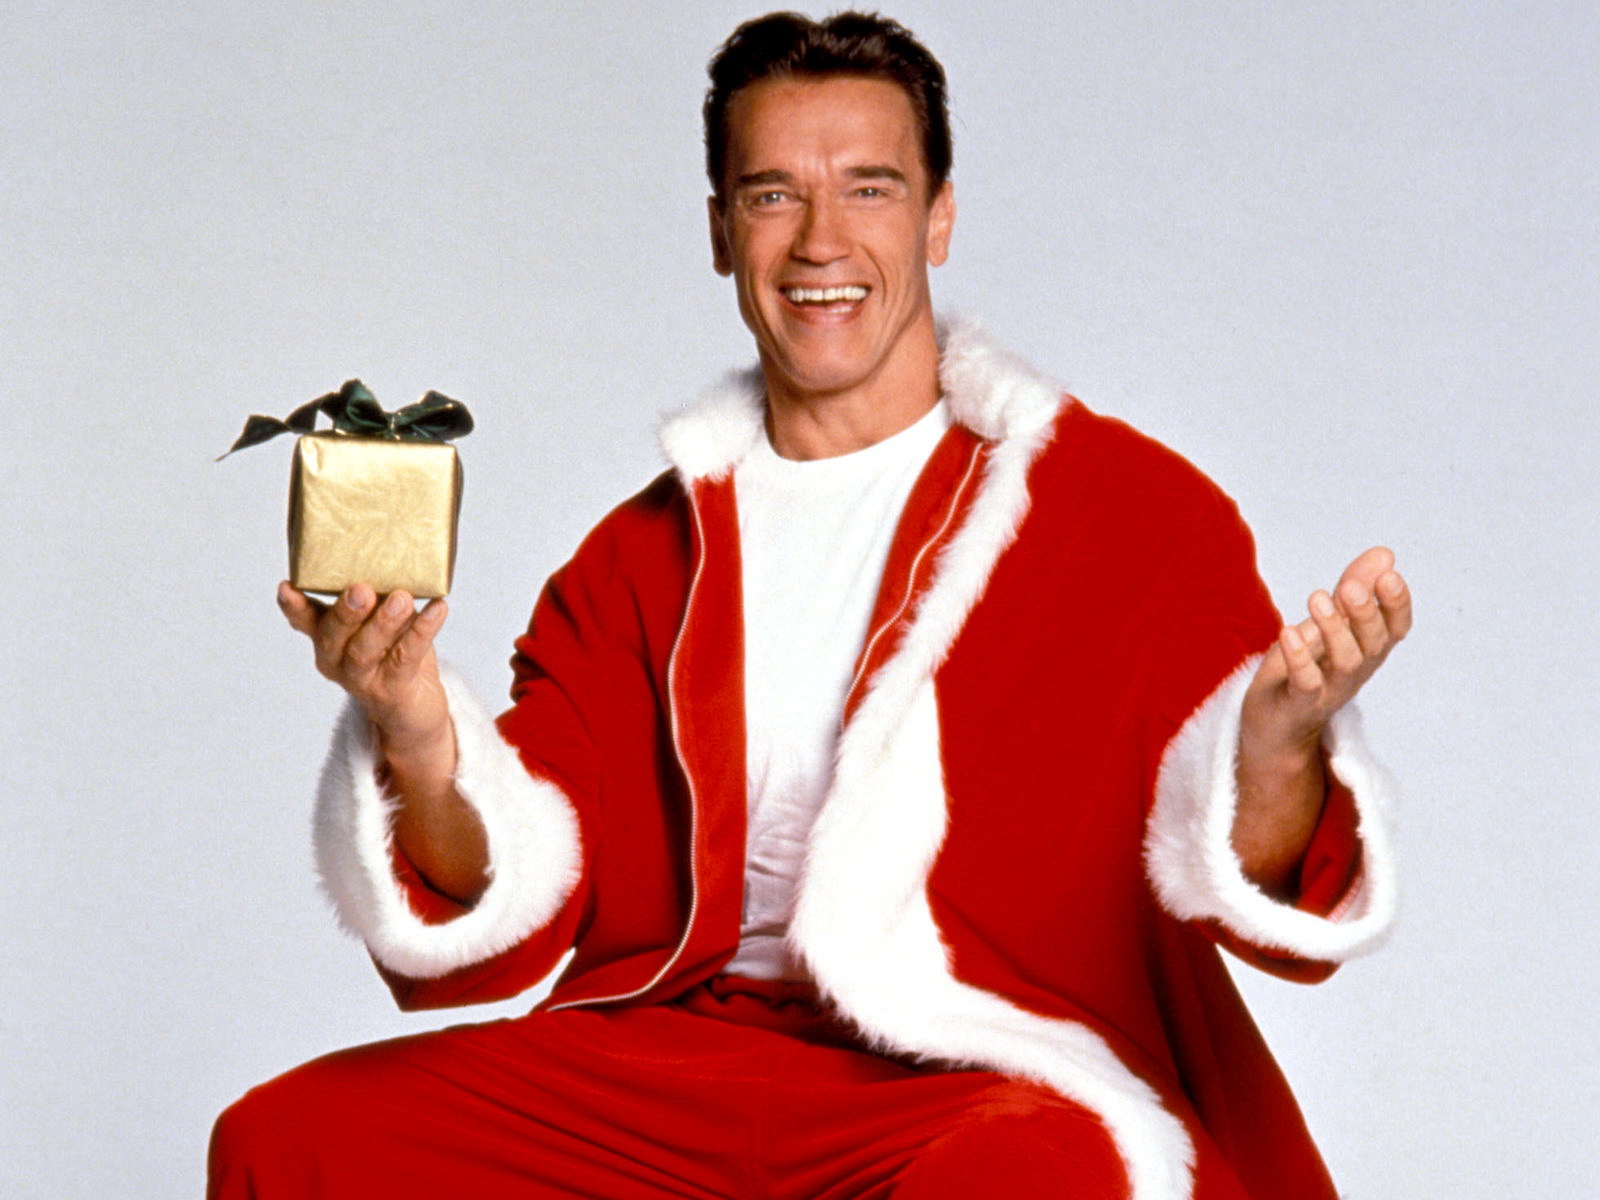 Foto vum Arnold Schwarzenegger als Sankt Claus